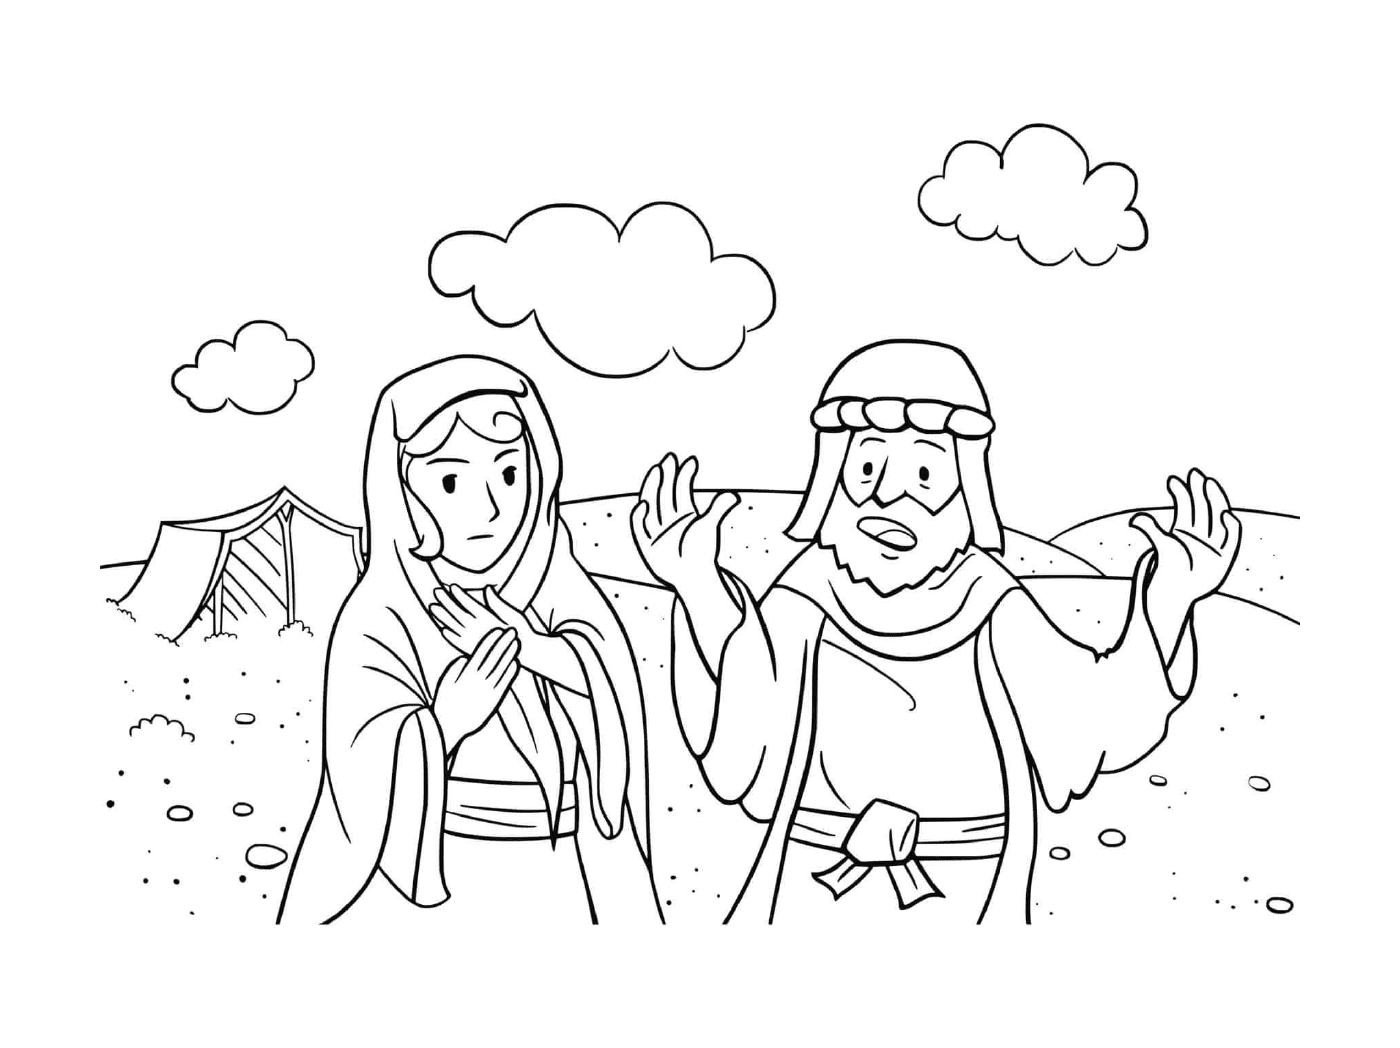  Gesù e la donna nel deserto 